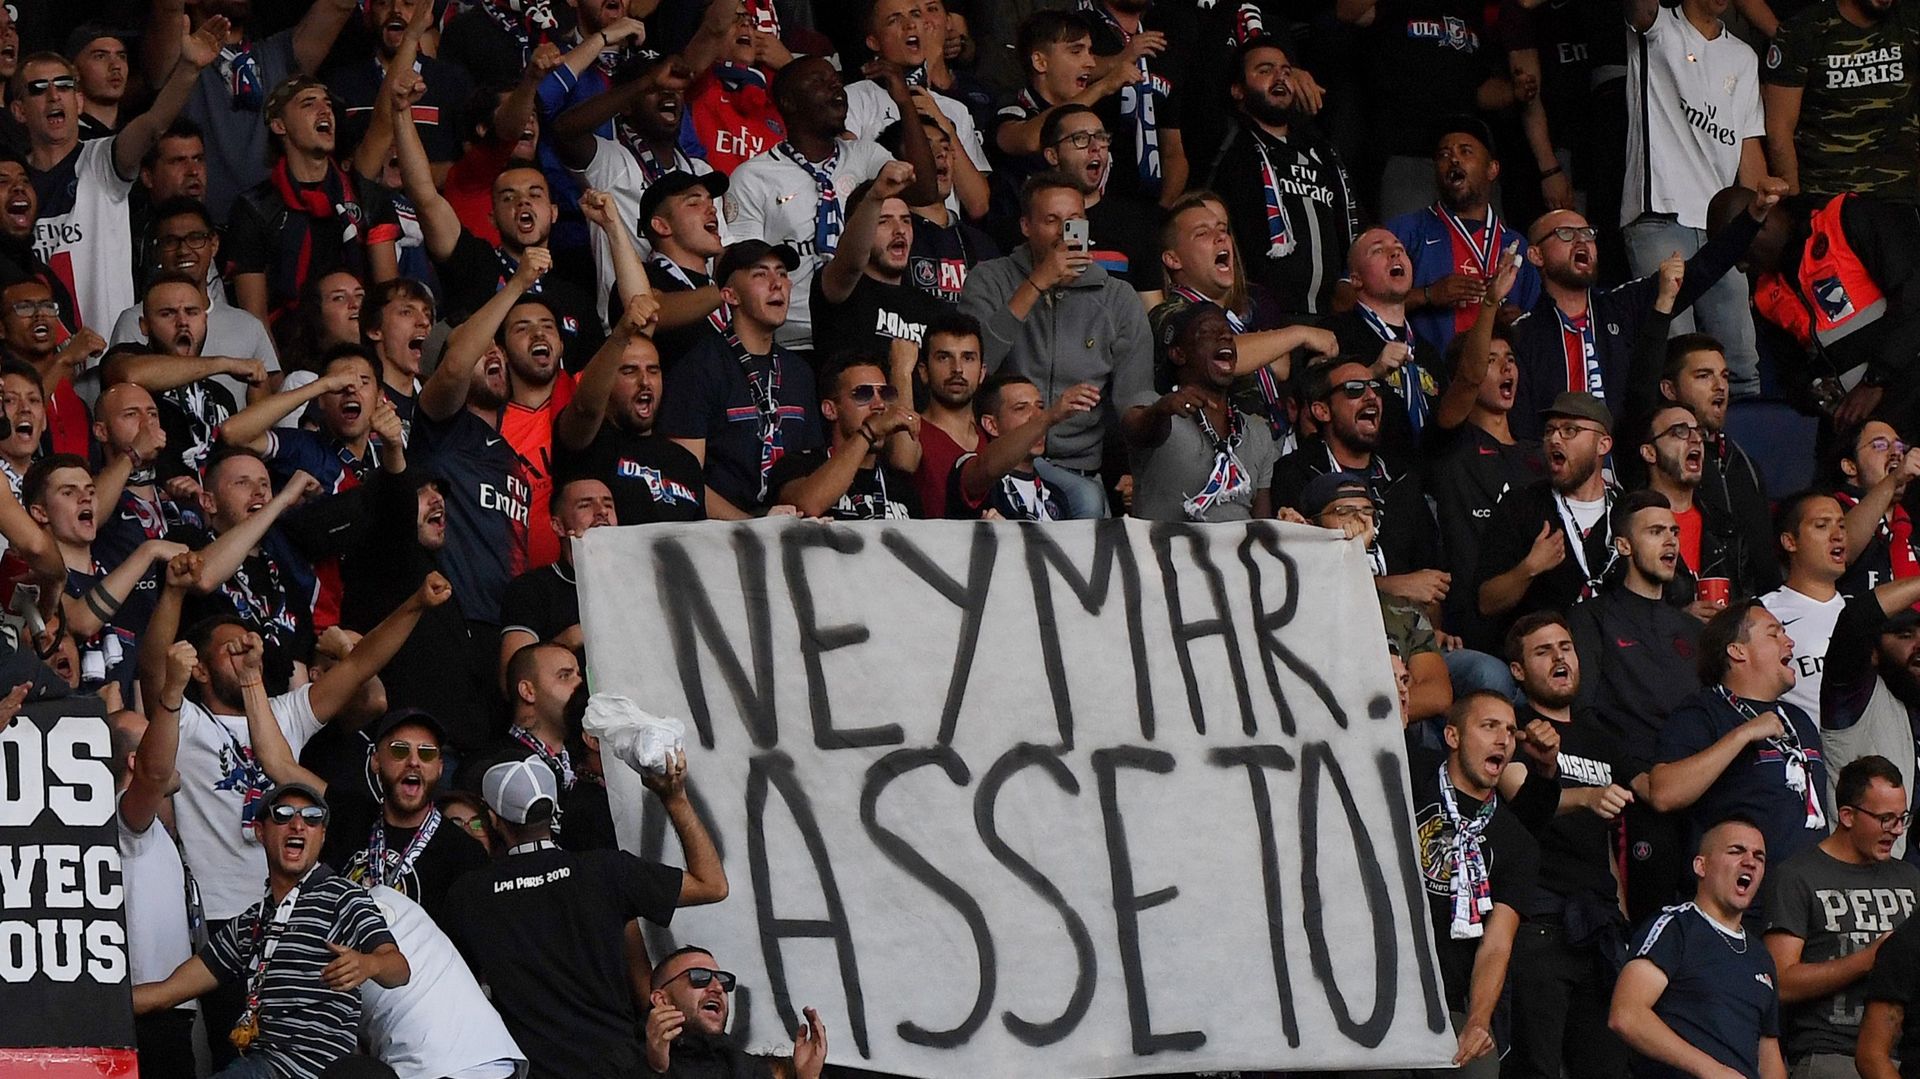 "Neymar casse-toi", les supporters du PSG veulent le départ du Brésilien